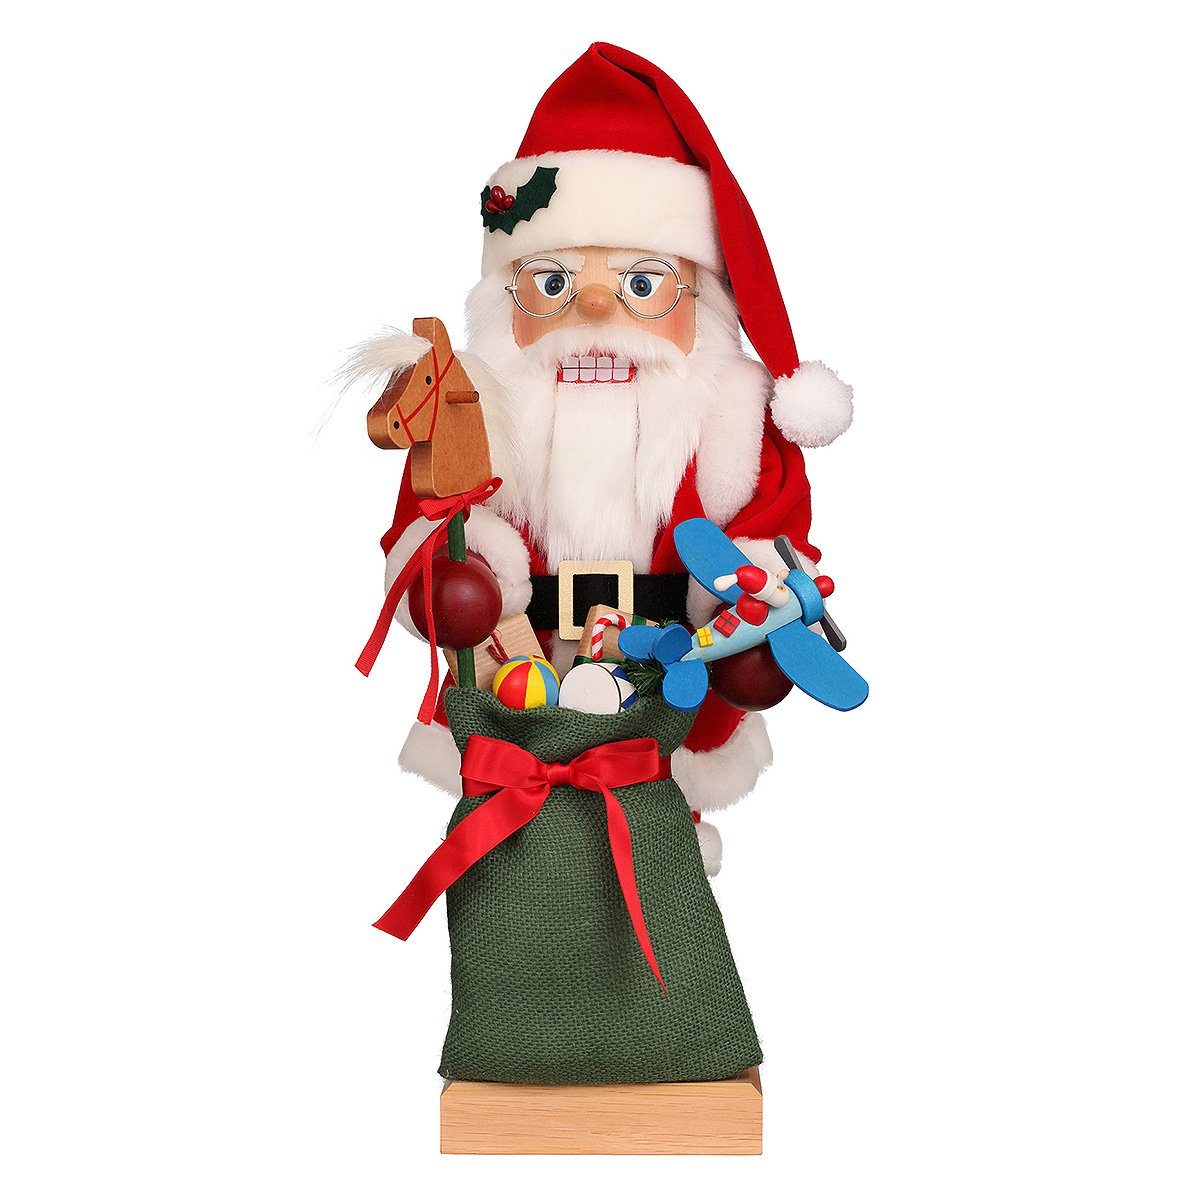 Christian Weihnachtsfigur Ulbricht Nussknacker Spielzeug mit Weihnachtsmann